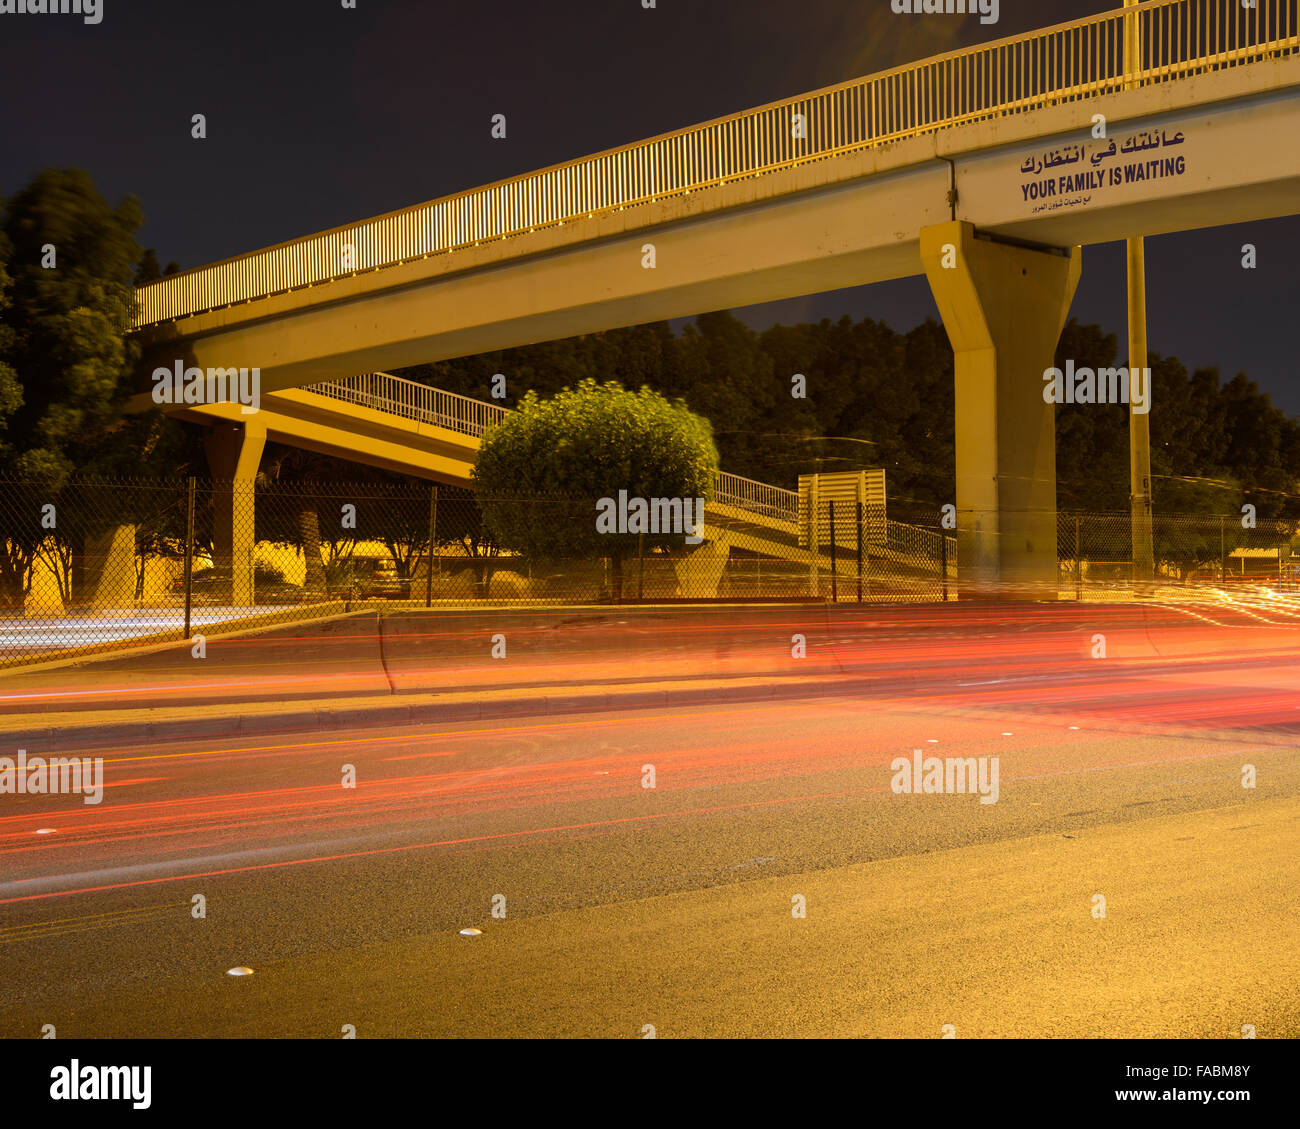 Passerelle pour piétons dans la nuit sur la route 30, Fahaheel Expressway, à Shaab, Koweït Banque D'Images